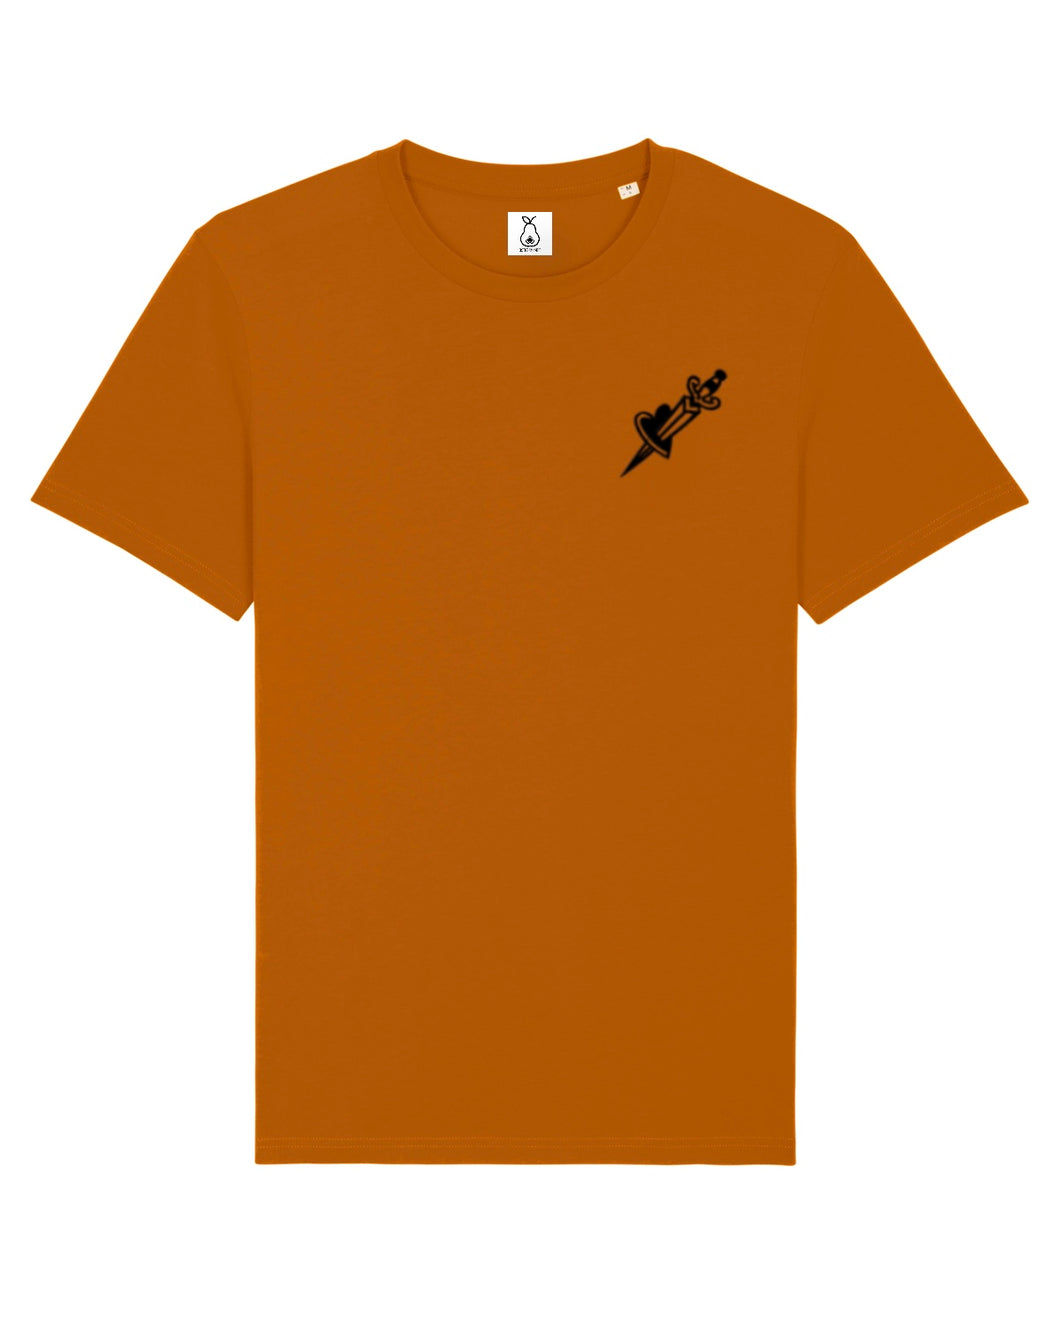 Zomewhere.Studios - Dagger - T-Shirt - Roasted Orange